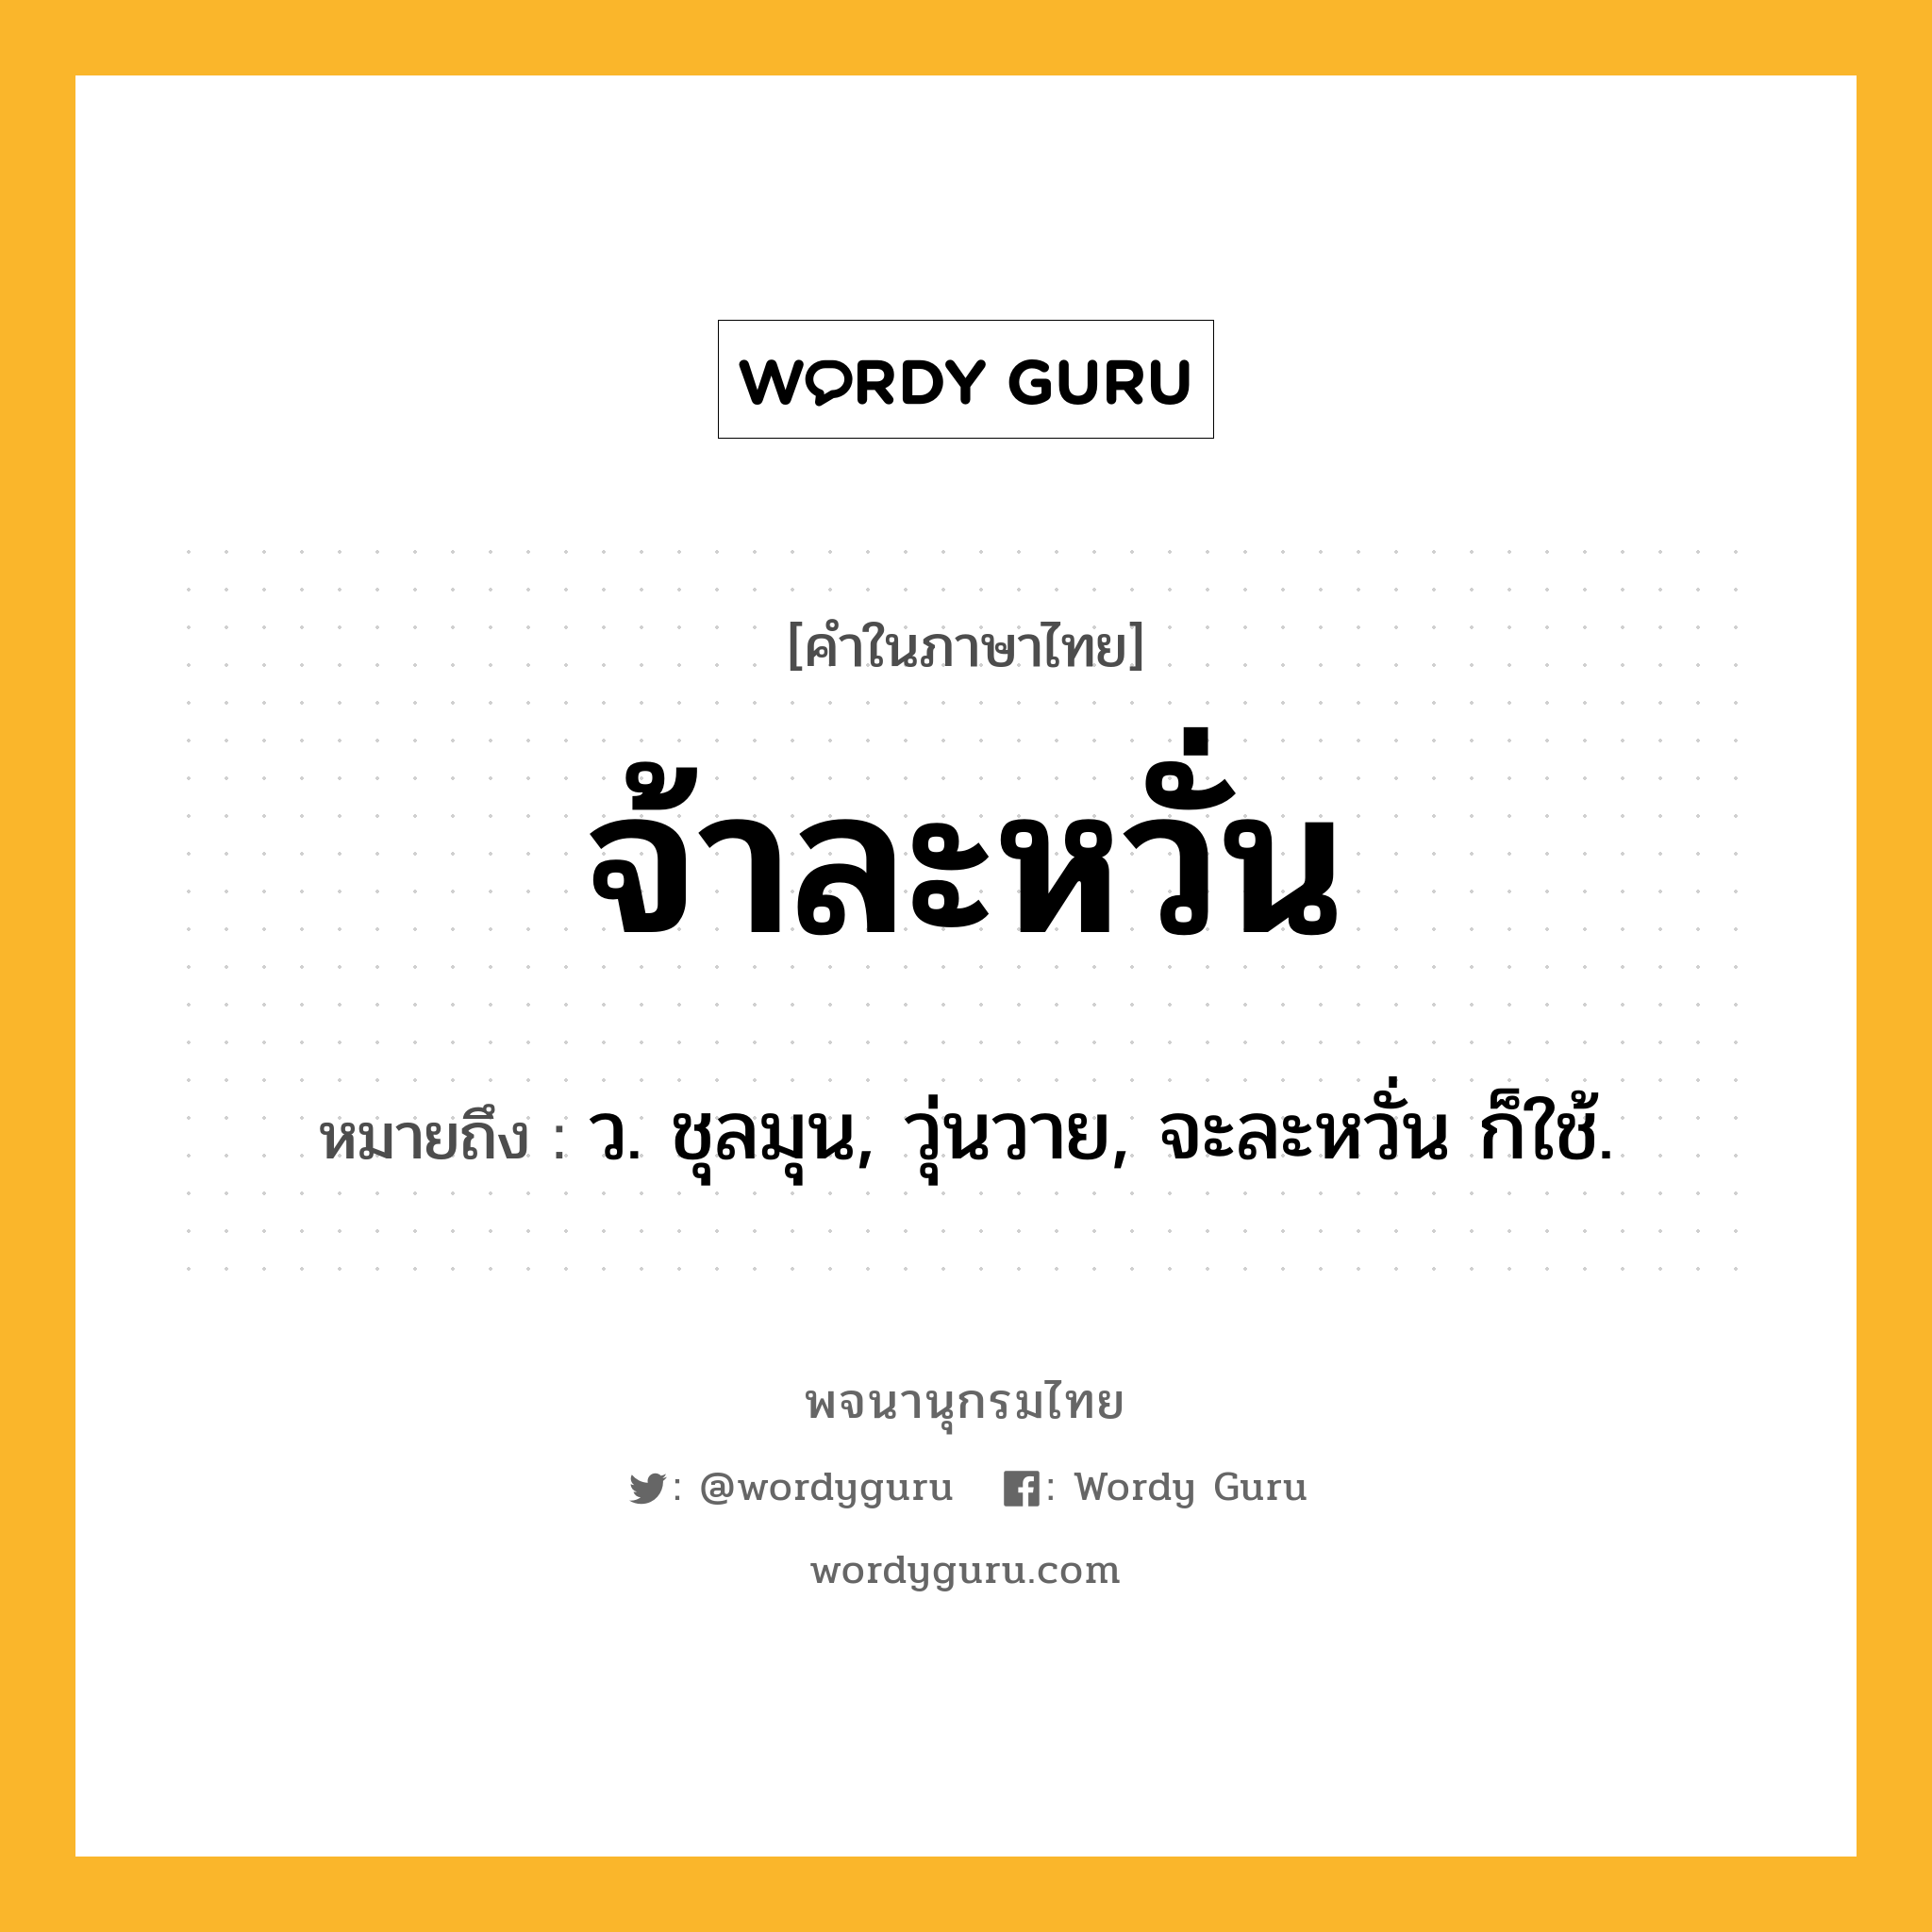 จ้าละหวั่น ความหมาย หมายถึงอะไร?, คำในภาษาไทย จ้าละหวั่น หมายถึง ว. ชุลมุน, วุ่นวาย, จะละหวั่น ก็ใช้.